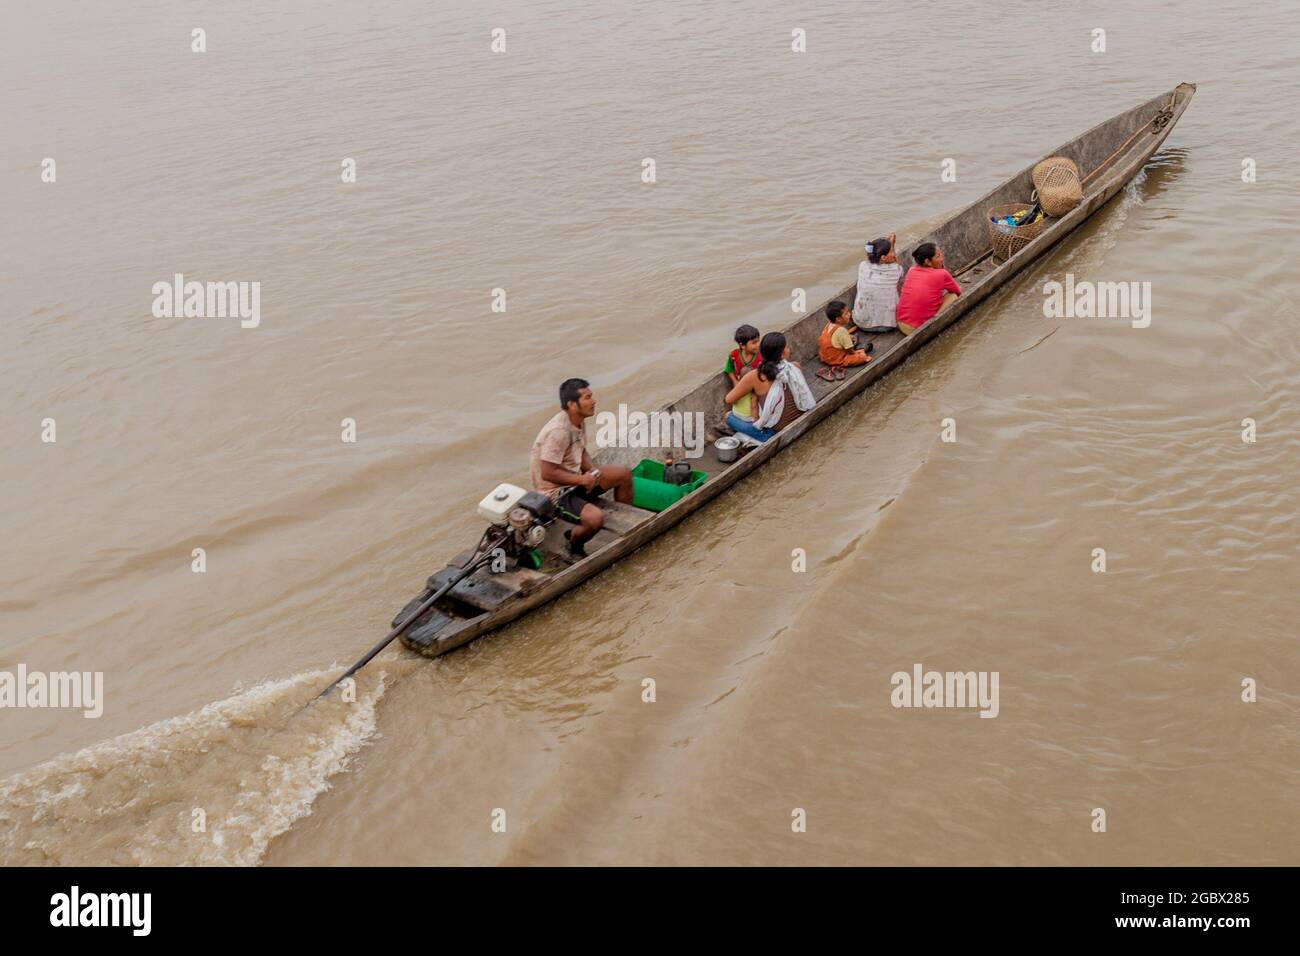 PANTOJA, PERÚ - 14 DE JULIO de 2015: Aldeanos en una canoa de dugout llamada Peke Peke en un río Napo, Perú Foto de stock